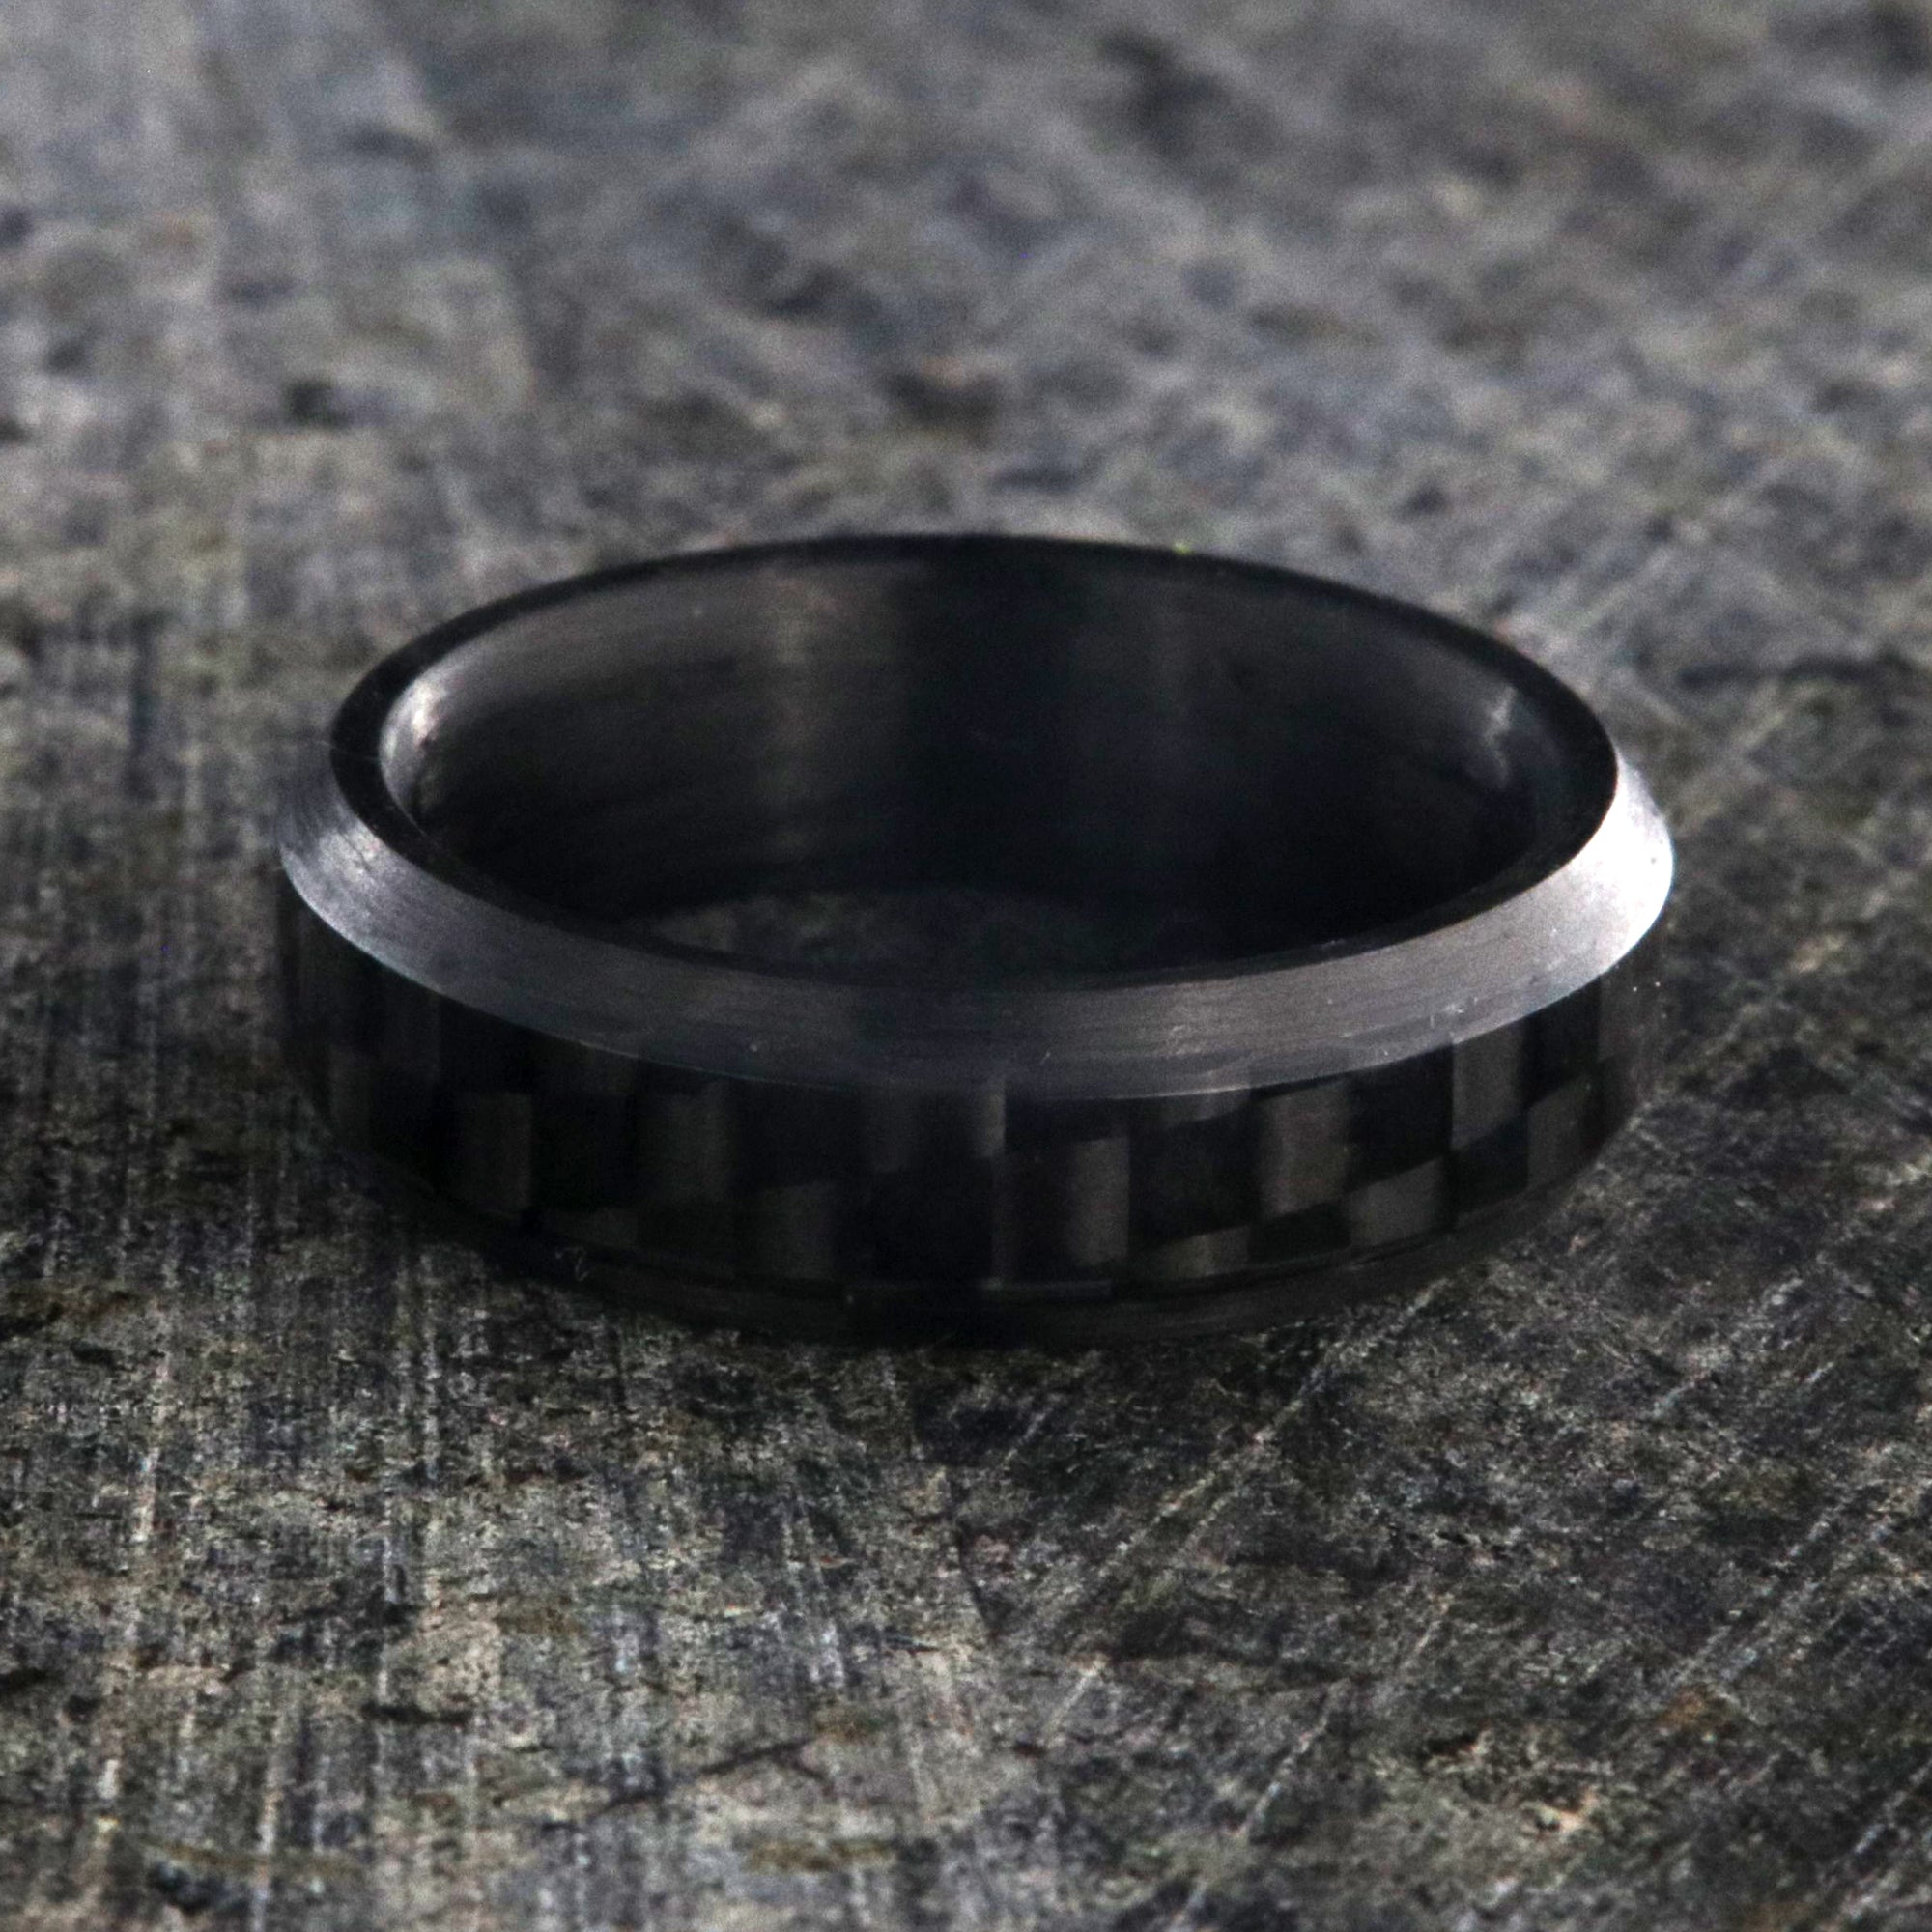 6mm wide black carbon fiber ring with beveled edges